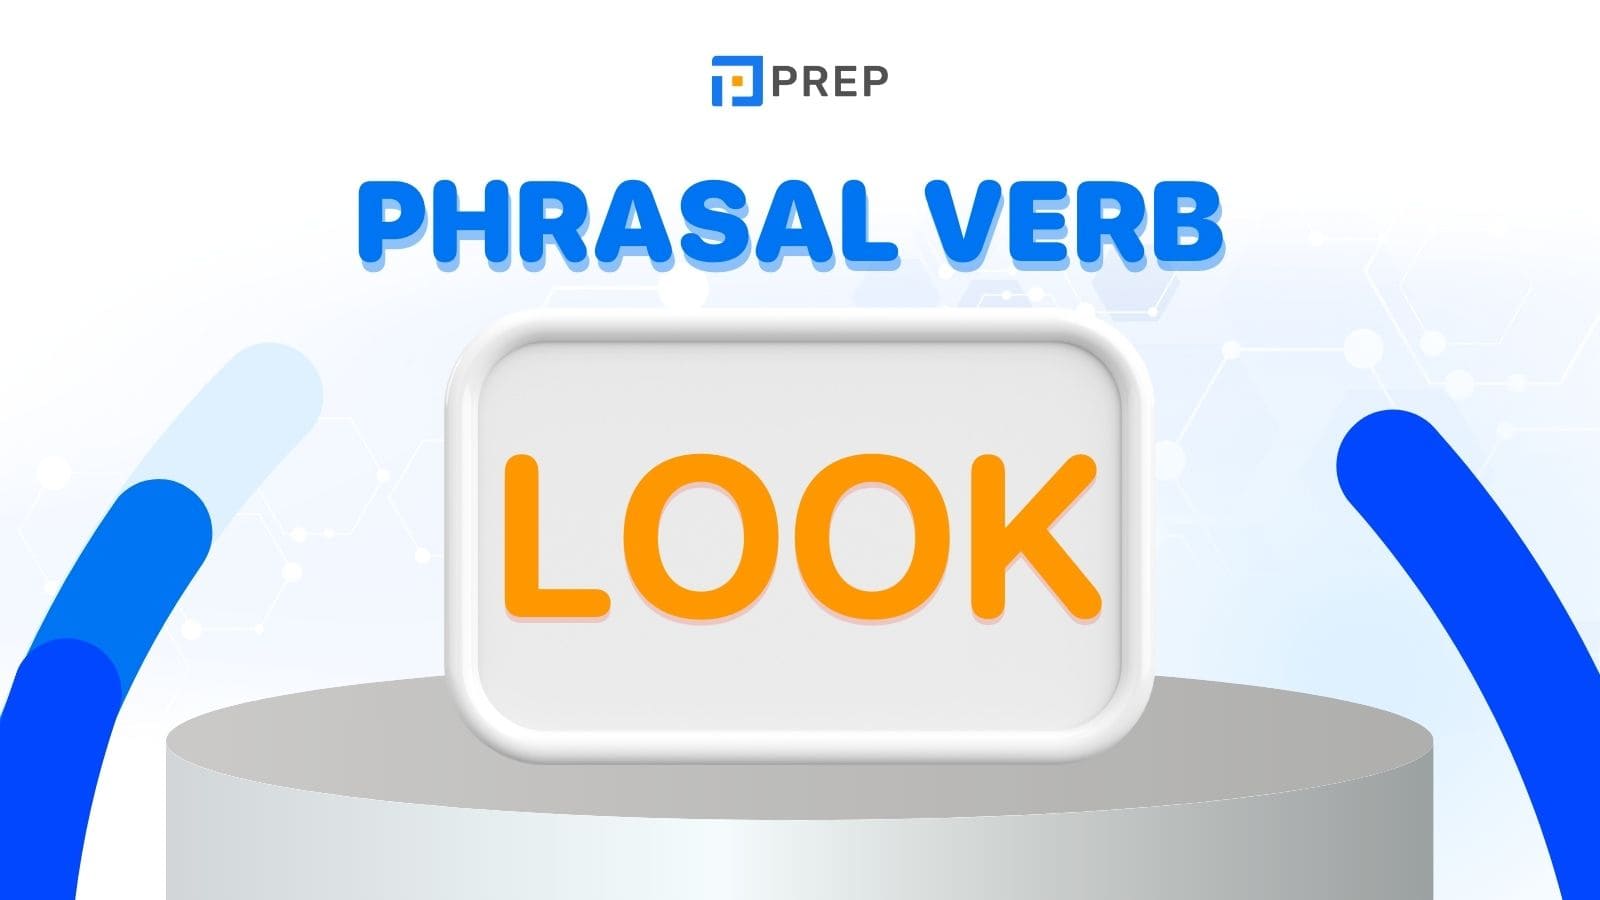 phrasal-verb-look.jpg